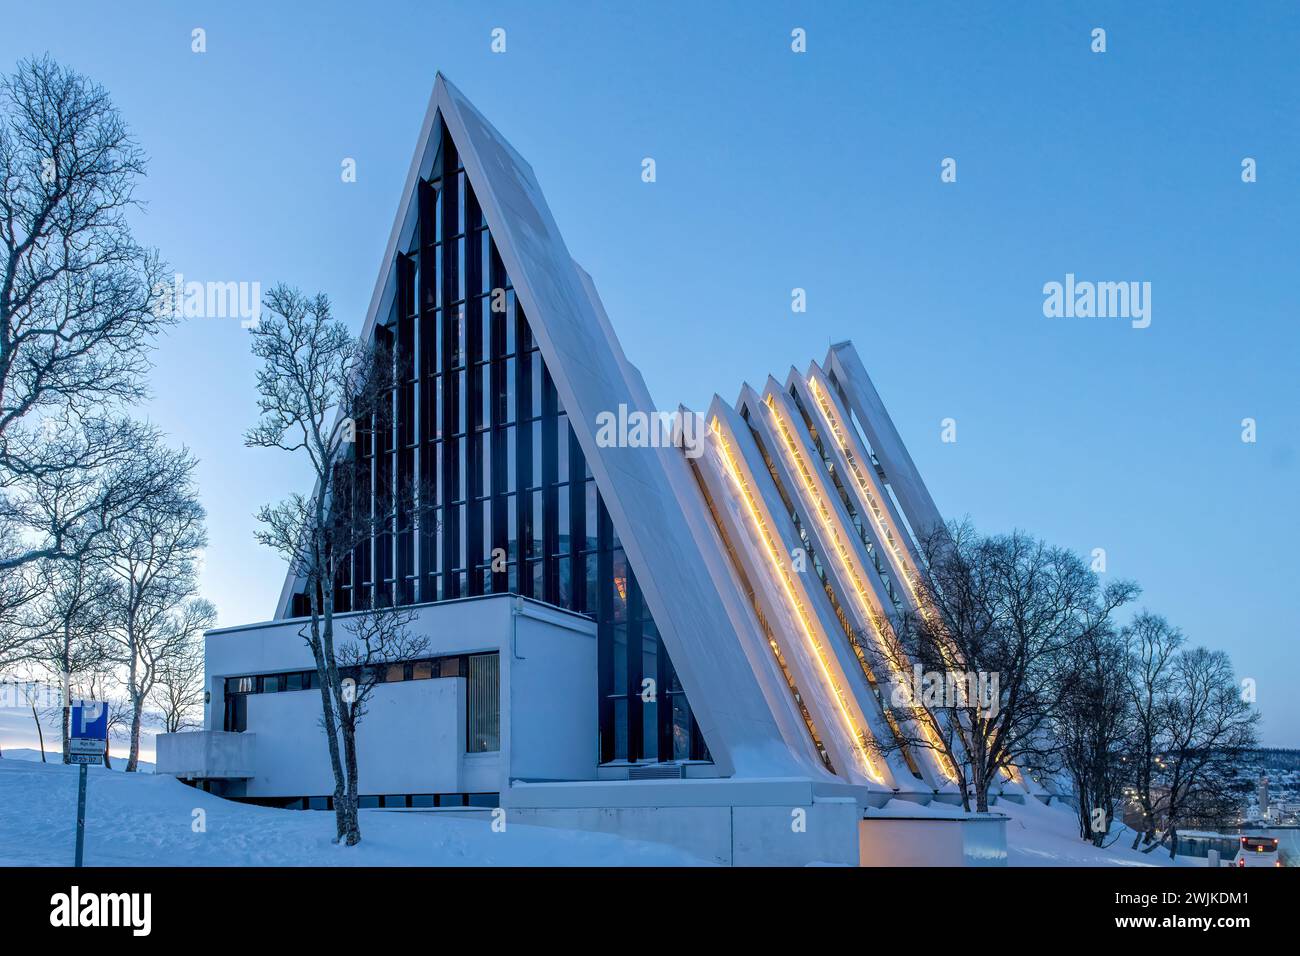 La cathédrale arctique de Tromso, Norvège Banque D'Images